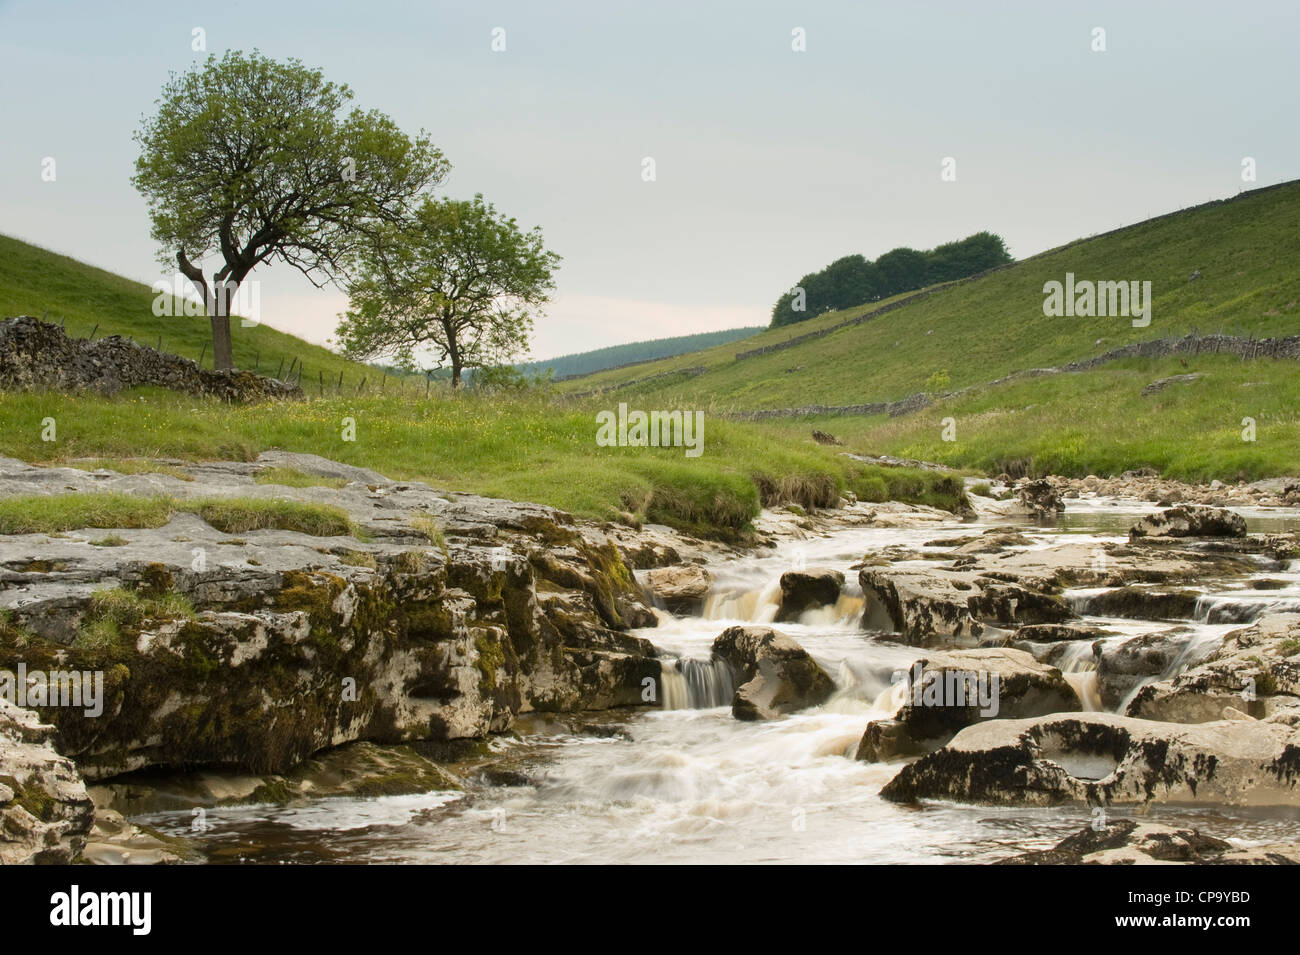 River Wharfe, circulant dans emplacement calme et pittoresque vallée en forme de v étroit, en cascade sur les rochers calcaires - Langstrothdale, Yorkshire, Angleterre, Royaume-Uni. Banque D'Images